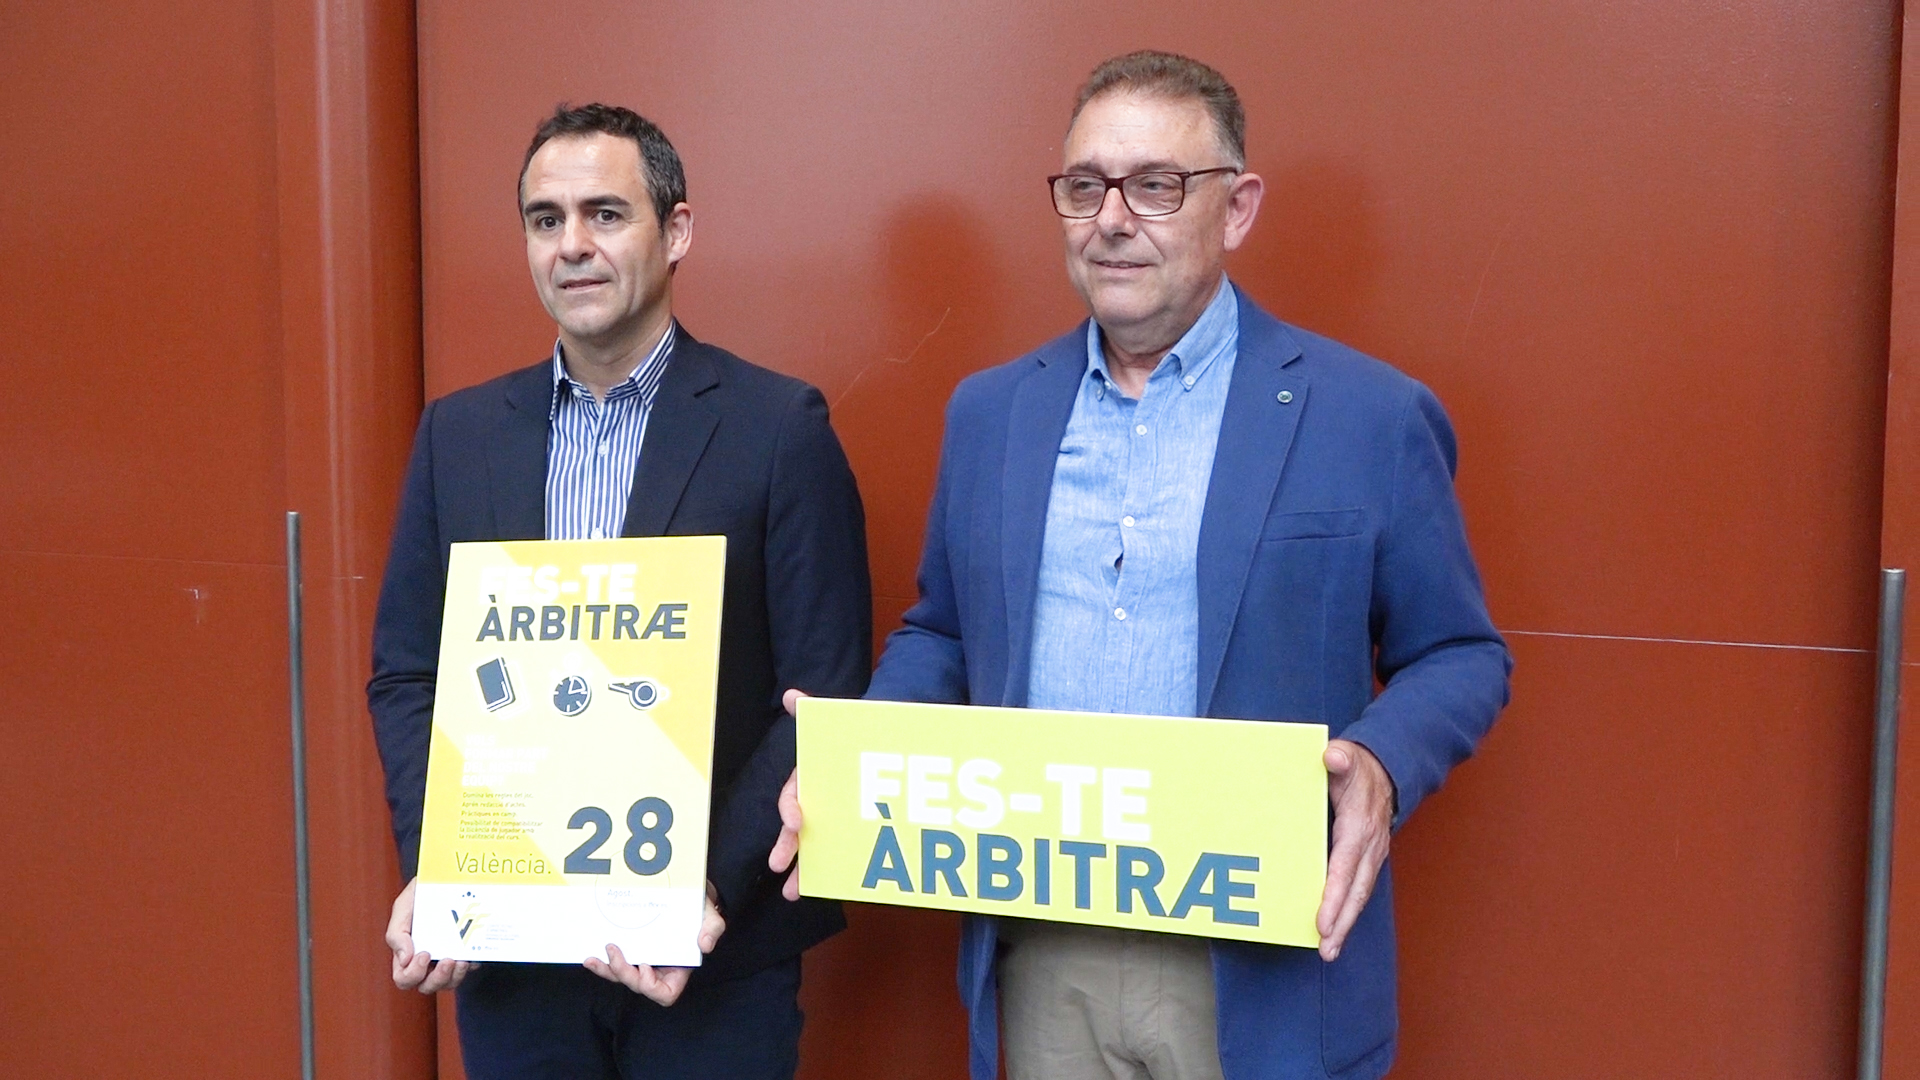 27 junio - Carlos Velasco Carballo y Pepe Enguix campaña Feste árbitre